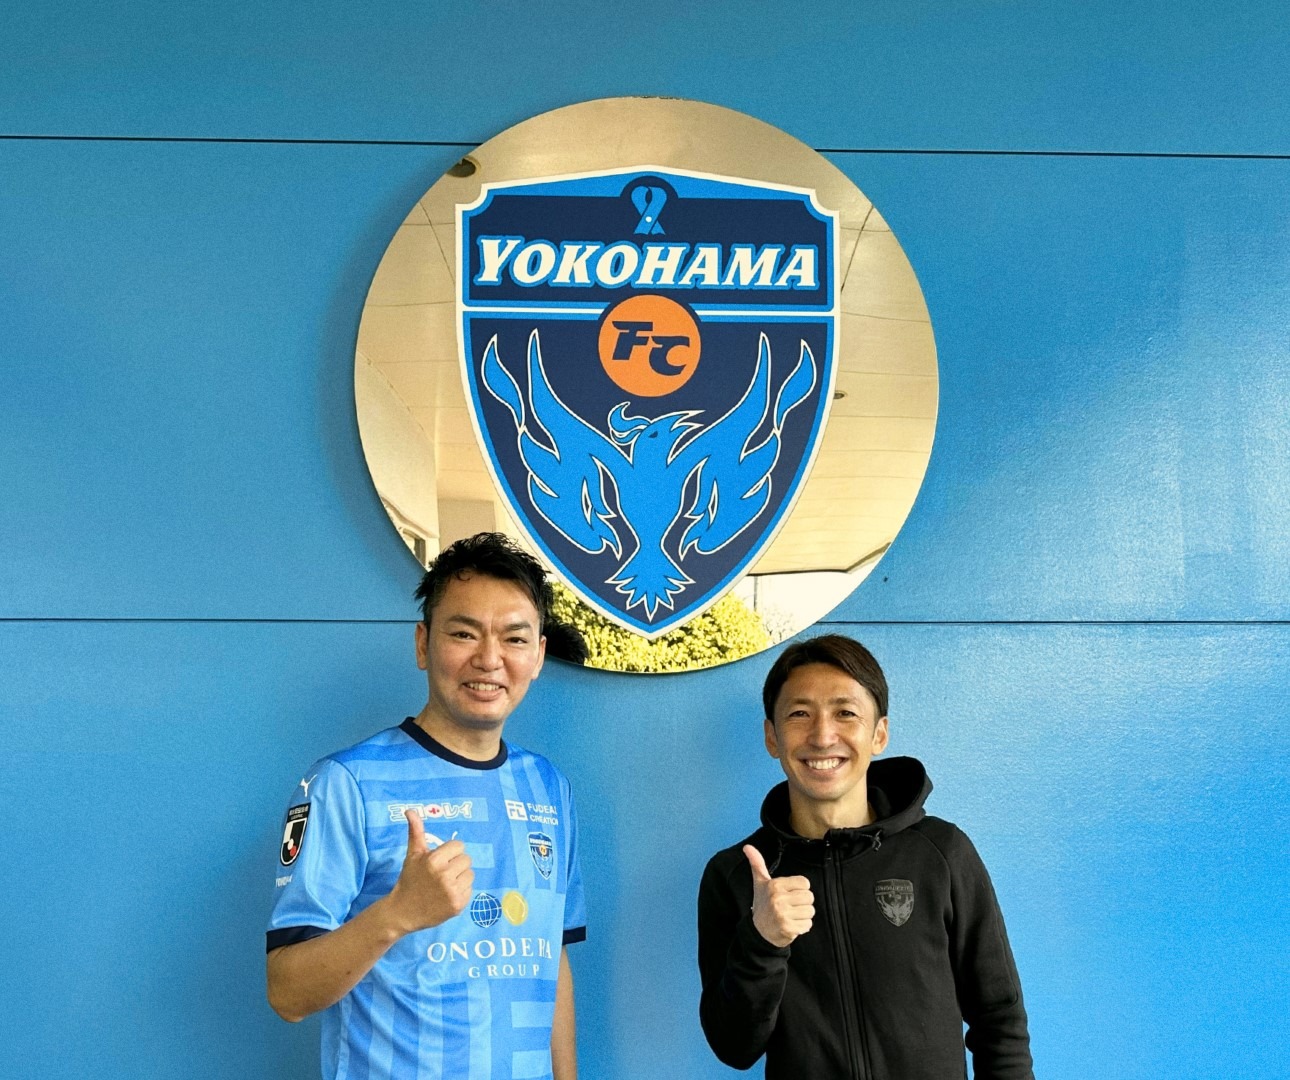 左から、コードミー 代取締役社⻑ 太⽥賢司、横浜FC C.R.O（Club Relations Officer）内⽥智也